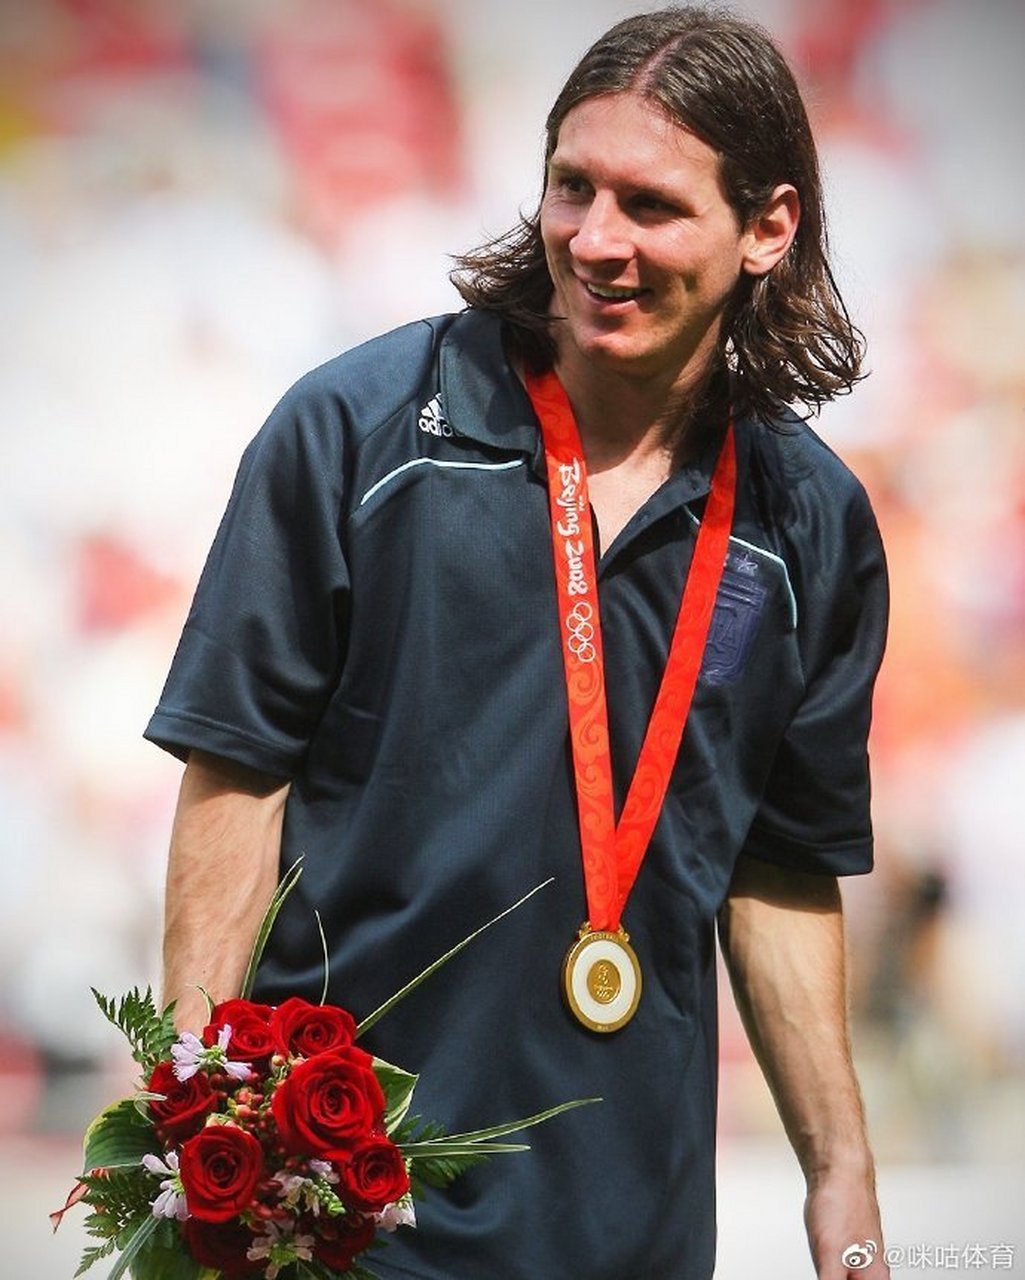 2008年8月23日北京奥运会男足决赛,拥有梅西,迪马利亚,阿圭罗